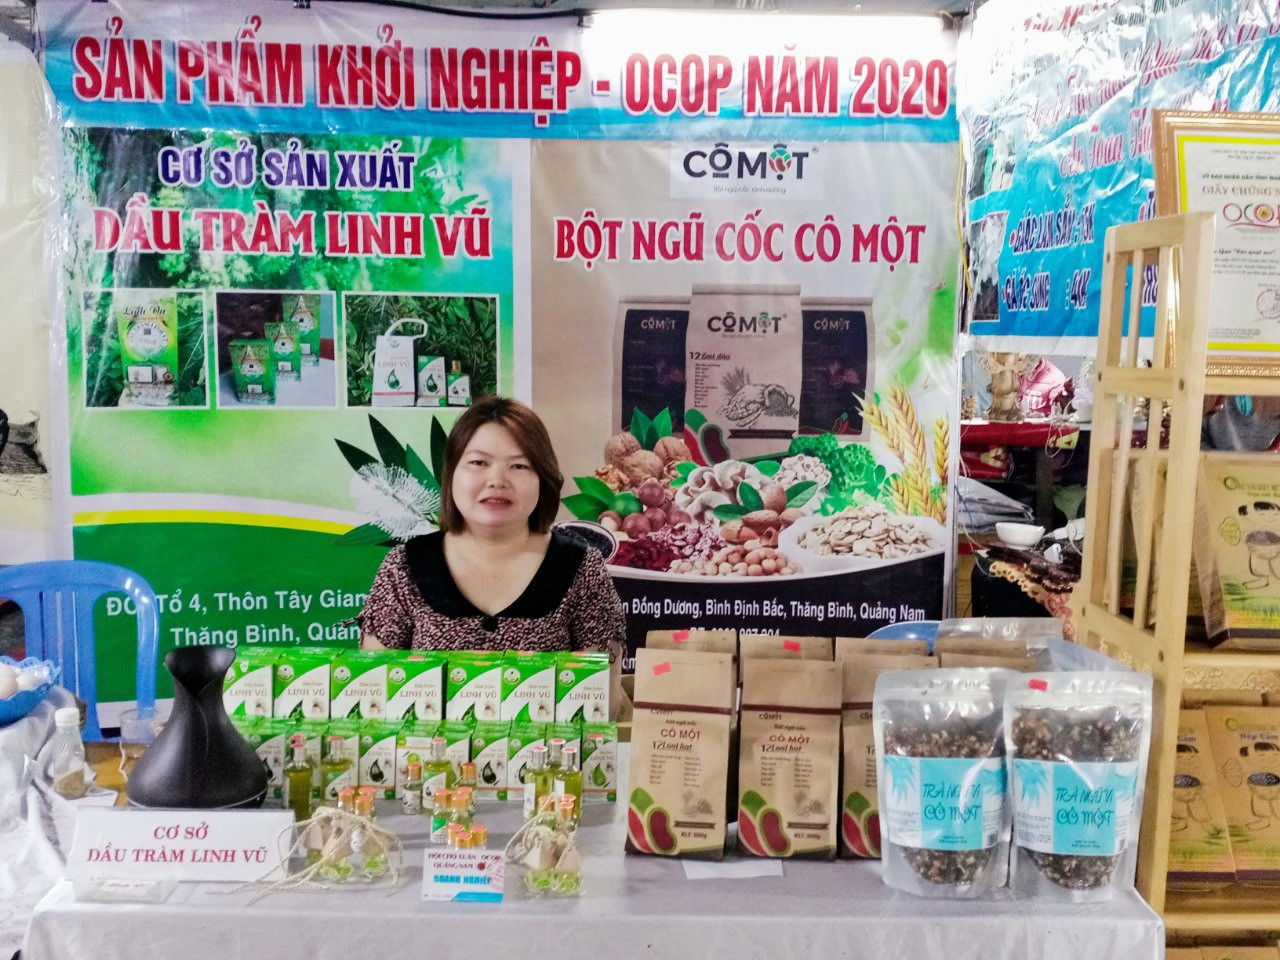 Sản phẩm tinh dầu tràm Linh Vũ của chị Bùi Thị Nguyệt (Thăng Bình) được công nhận sản phẩm OCOP cấp tỉnh 3 sao. Ảnh: H.LIÊN